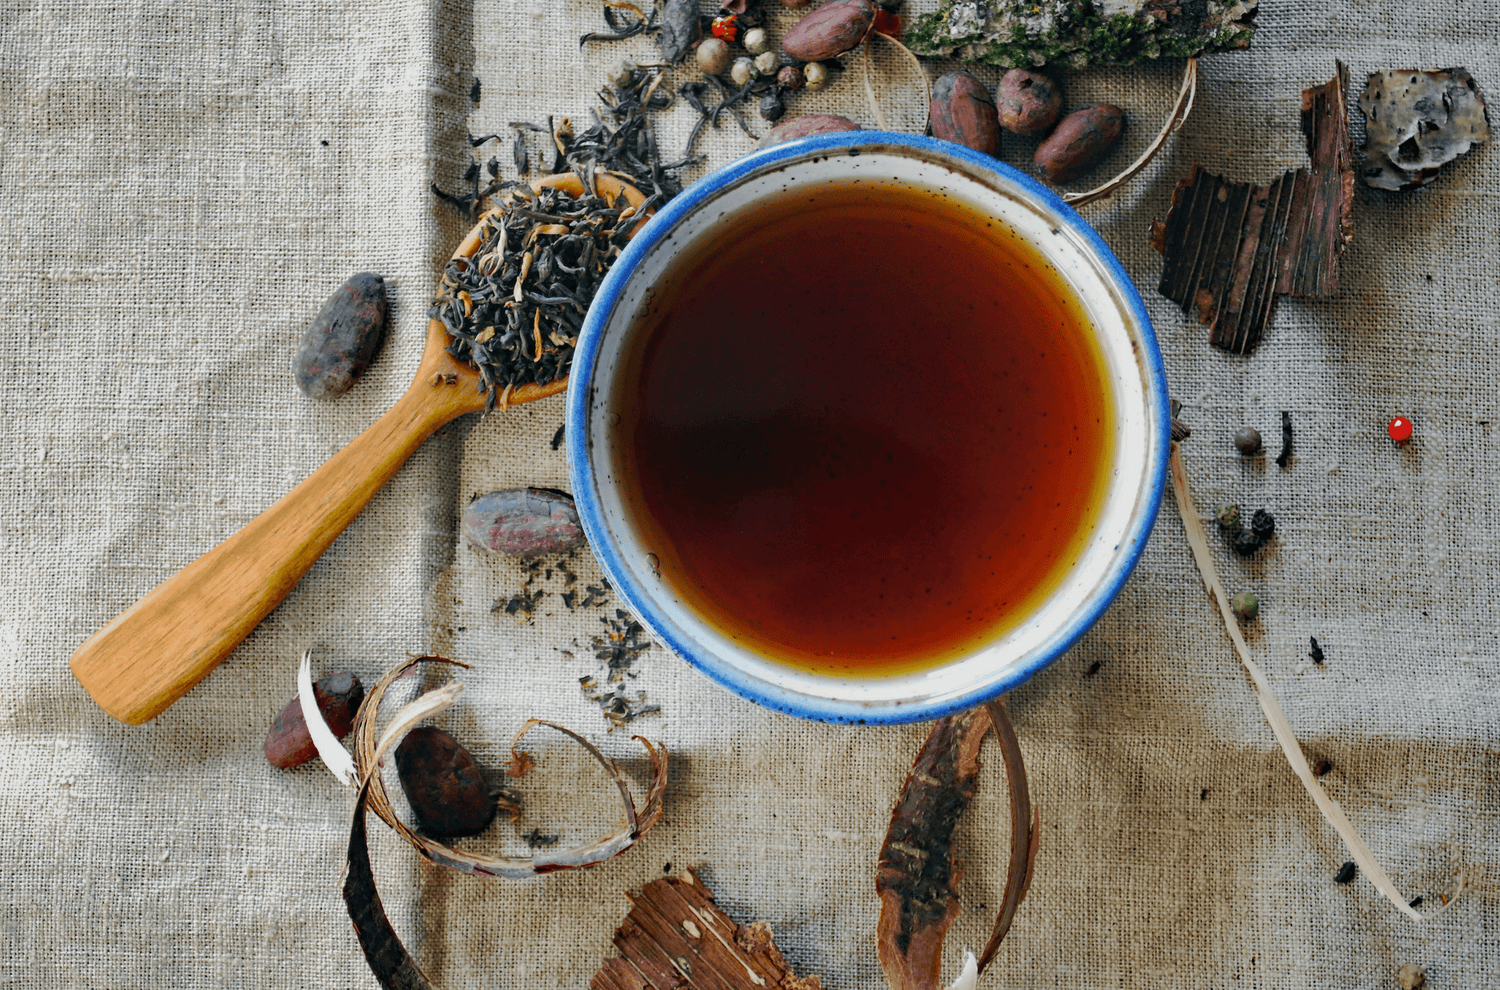 Eine Tasse mit dunkelbraunem Tee steht auf einer Leinendecke, umgeben von verschiedenen Teeblättern, Kakaobohnen, Holzstücken und Gewürzen. Ein Holzlöffel mit losen Teeblättern liegt daneben, was eine natürliche und rustikale Atmosphäre vermittelt.